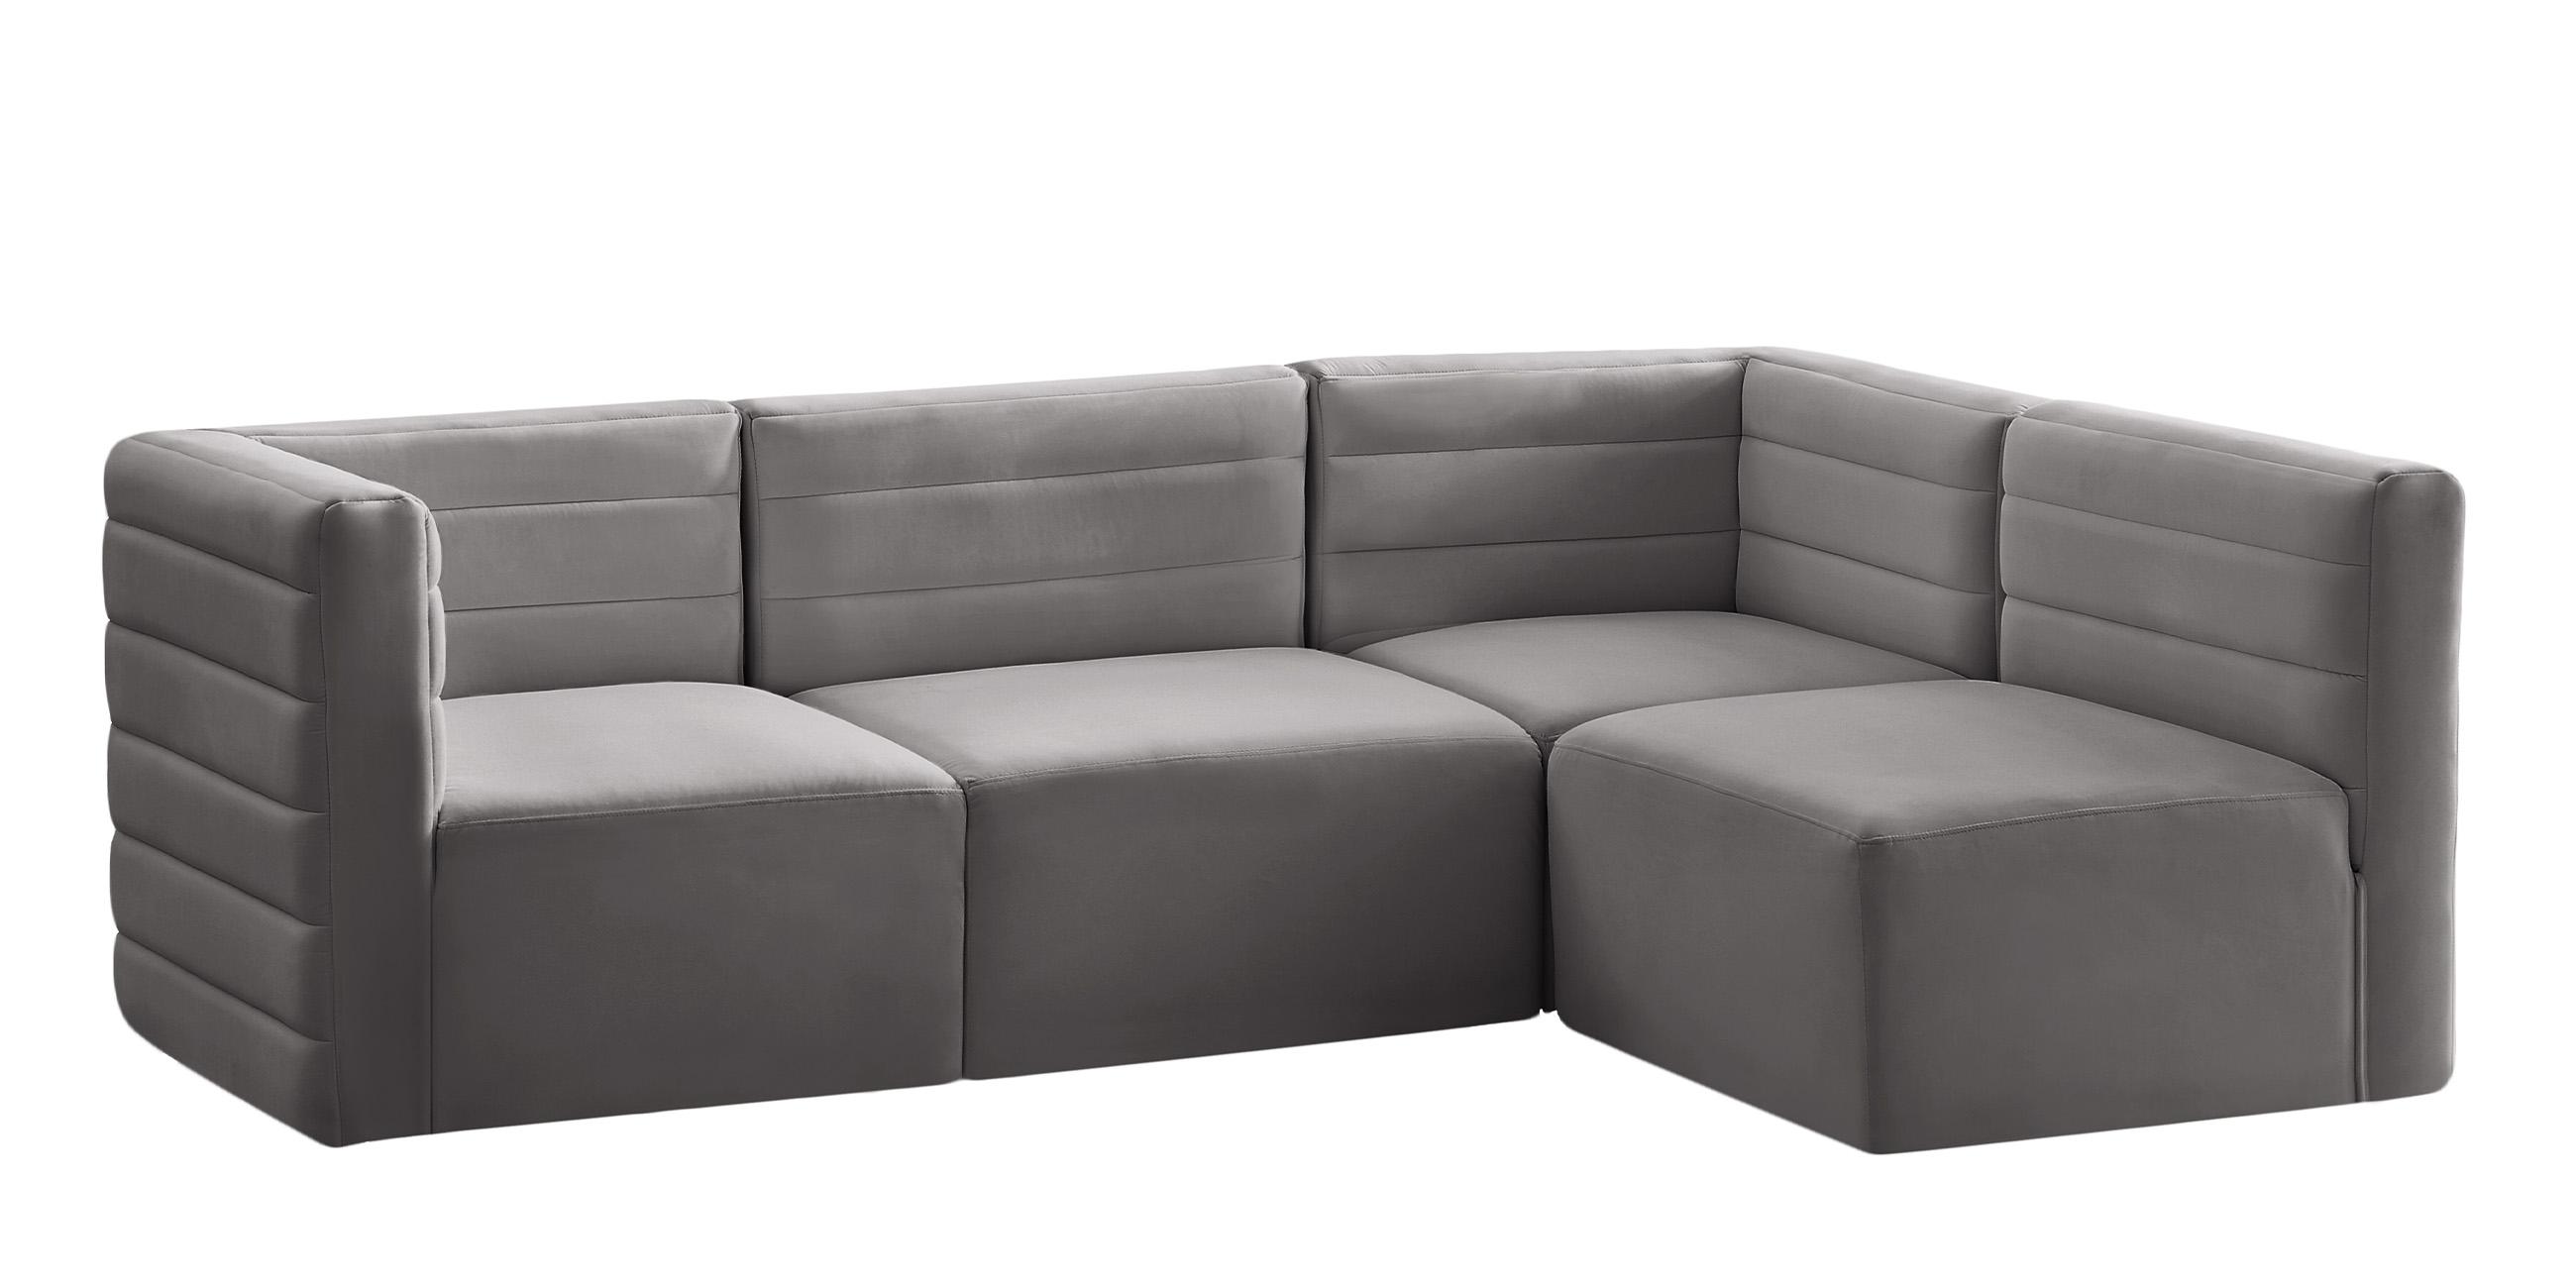 Contemporary, Modern Modular Sectional Sofa Quincy 677Grey-Sec4A 677Grey-Sec4A in Gray Velvet